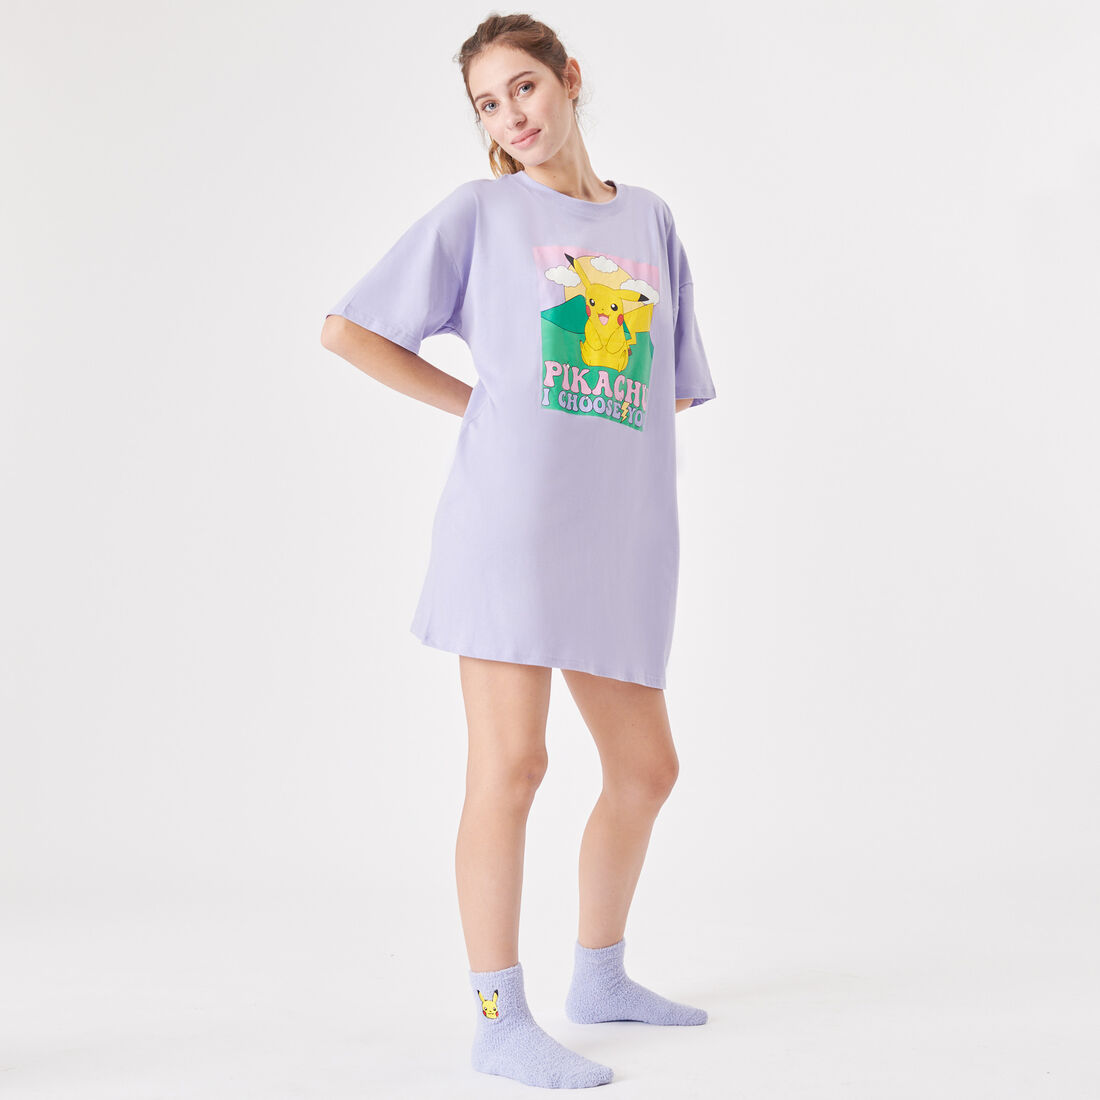 long pikachu T-shirt;